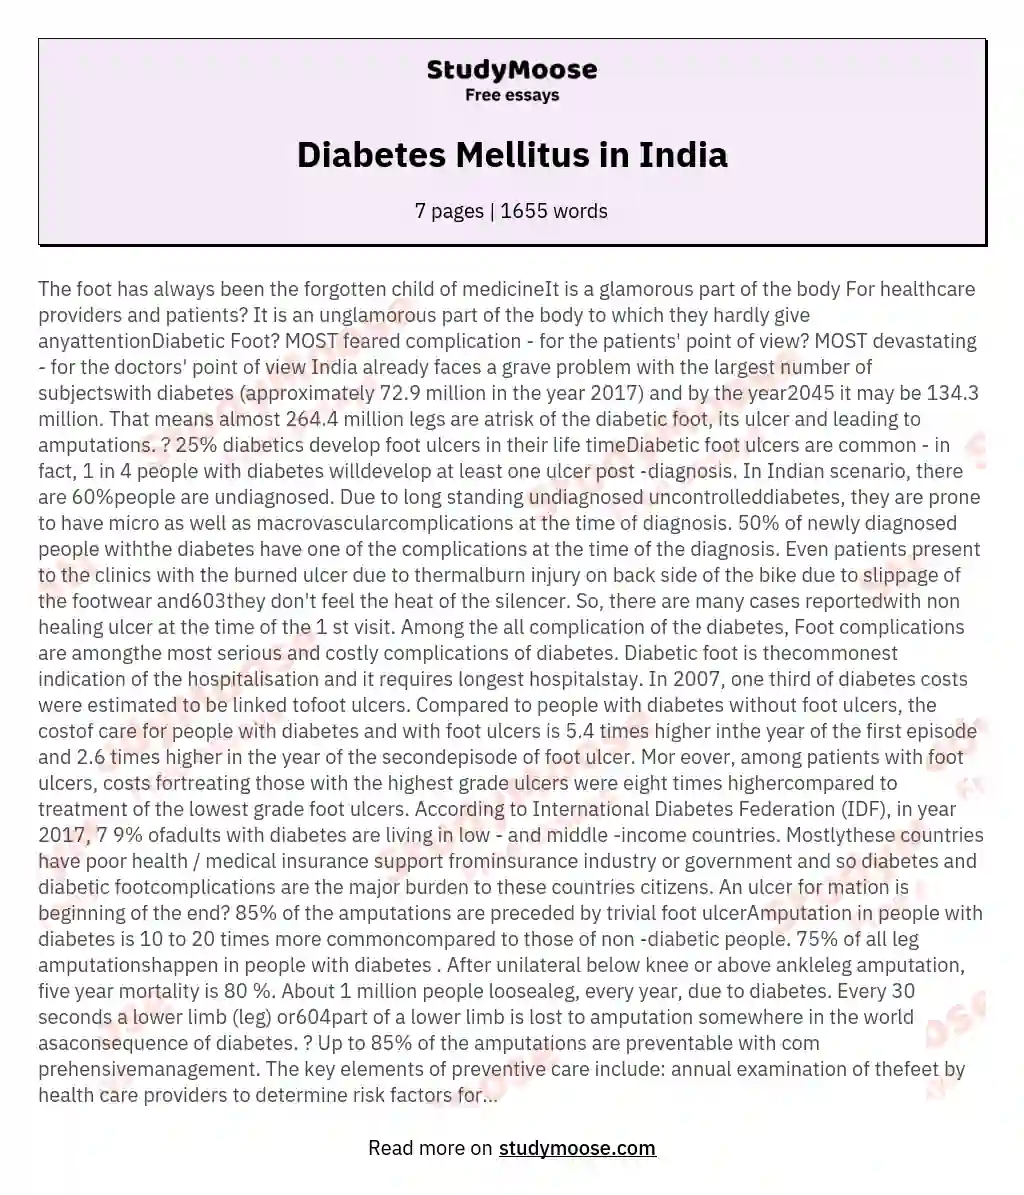 Diabetes Mellitus in India essay